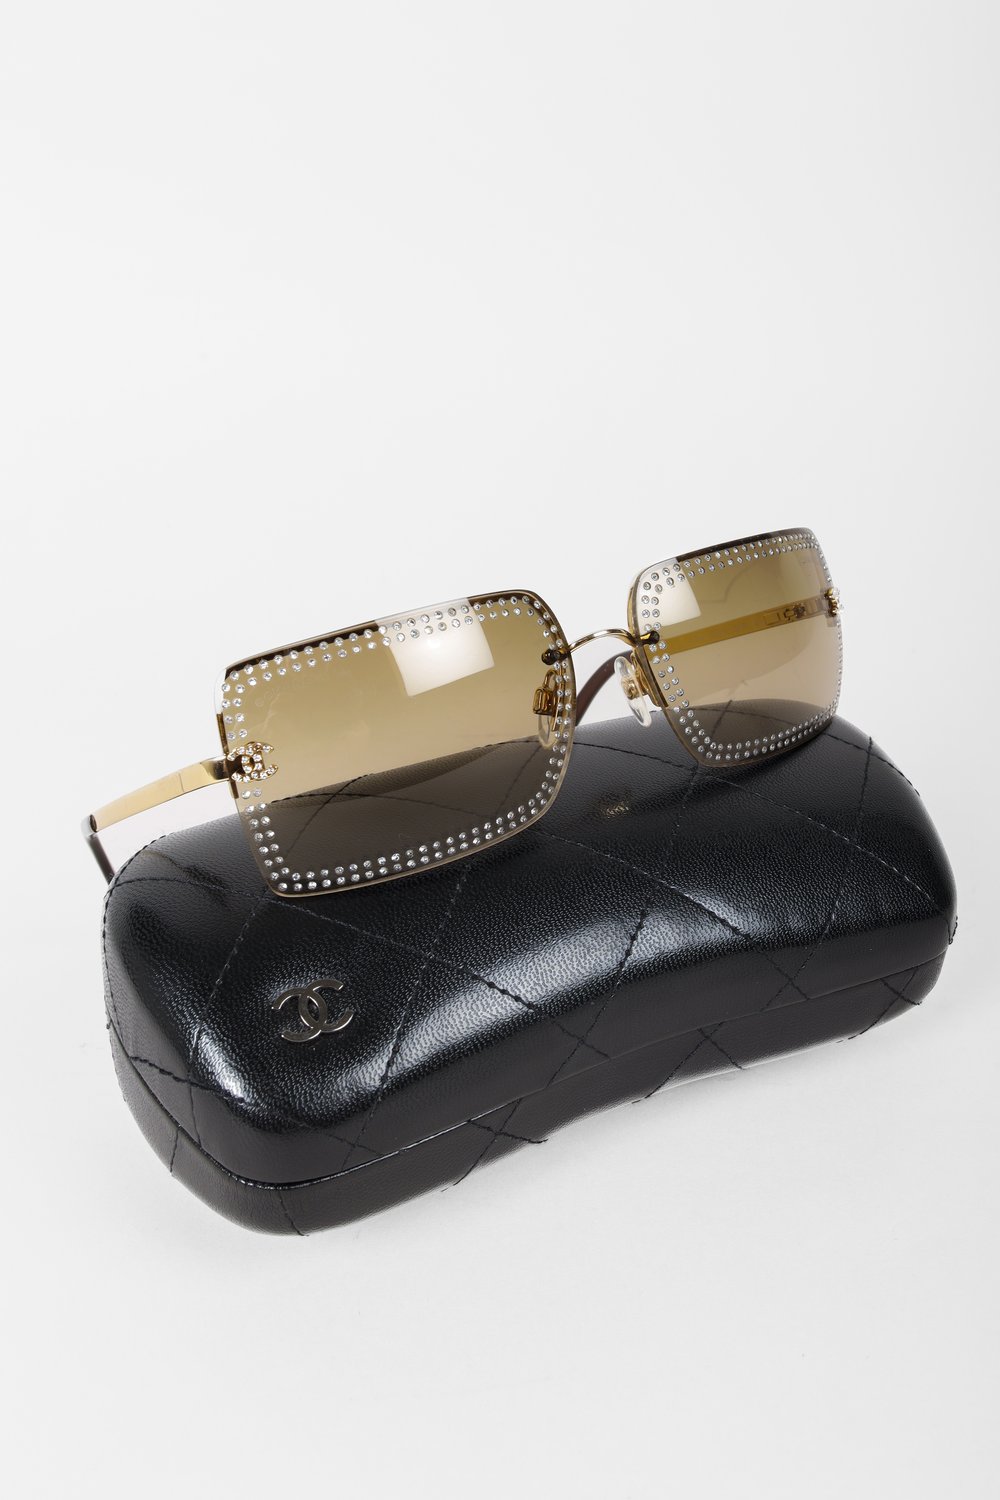 Chanel CC Gold Rhinestone Square Sunglasses — BLOGGER ARMOIRE